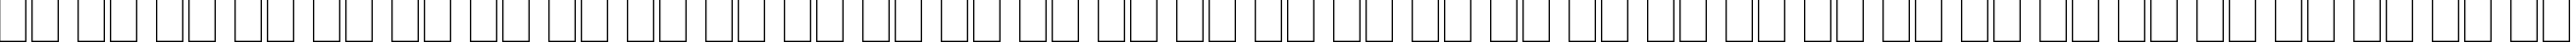 Пример написания русского алфавита шрифтом Arriba Arriba LET Plain:1.0